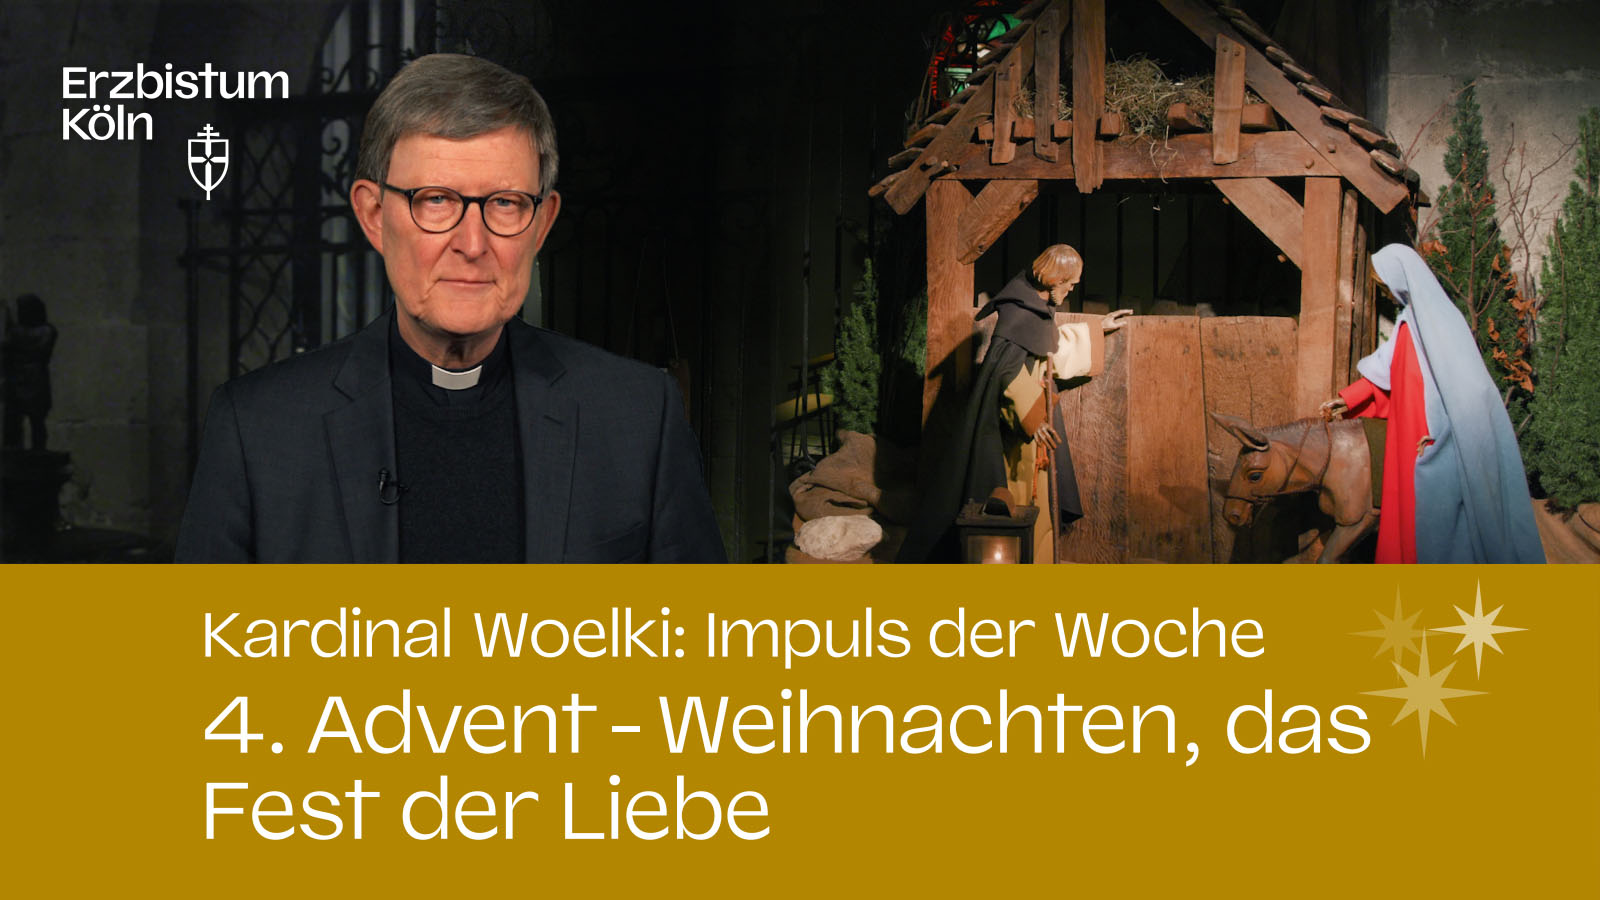 Kardinal Woelki: Impuls der Woche – 4. Advent - Weihnachten, das Fest der Liebe